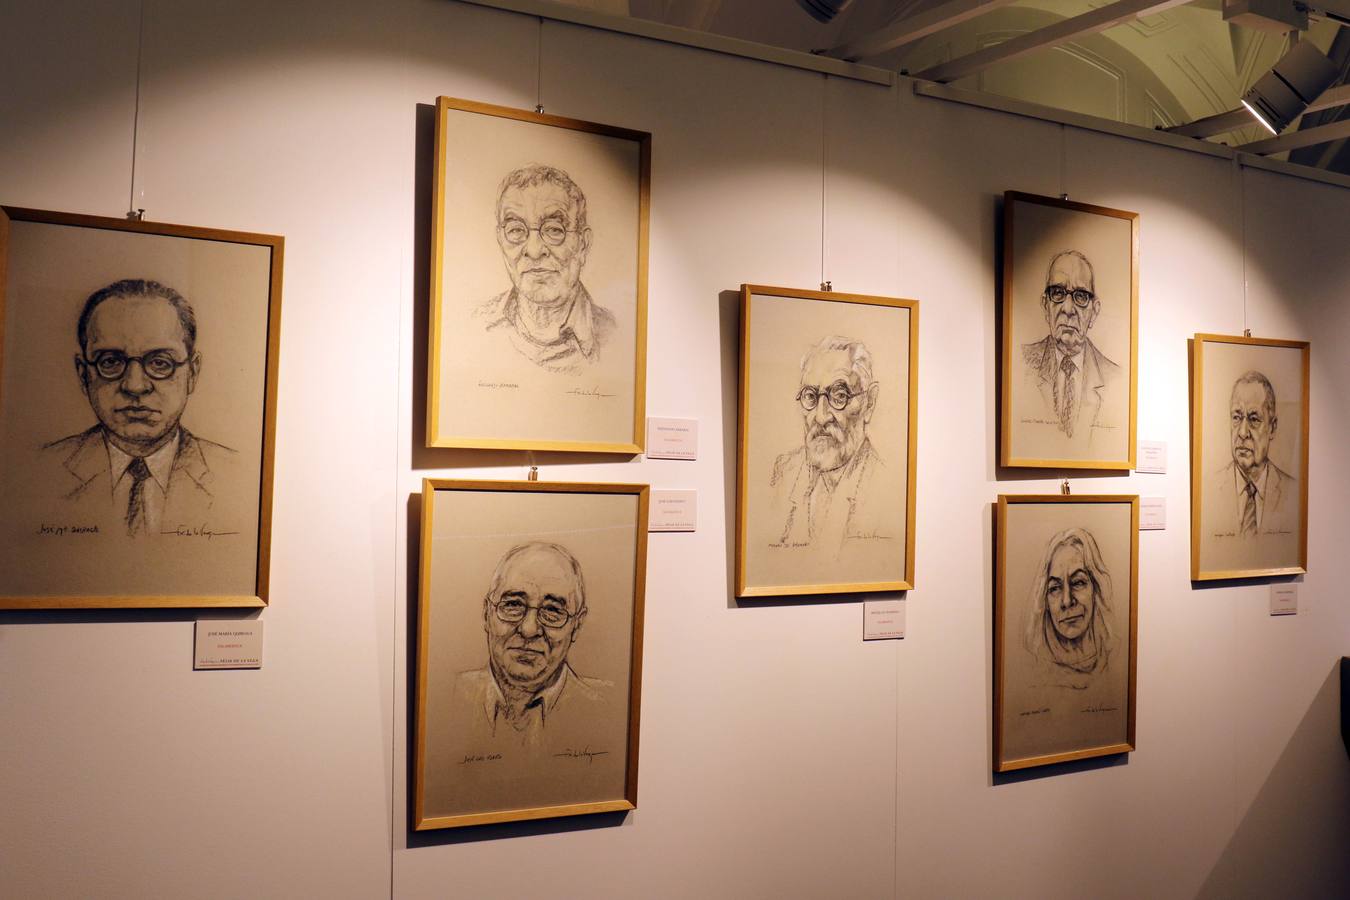 La muestra, que reúne un total de 59 retratos de autores de las nueve provincias, estará abierta hasta el próximo 15 de abril en el Palacio del Licenciado Butrón de Valladolid